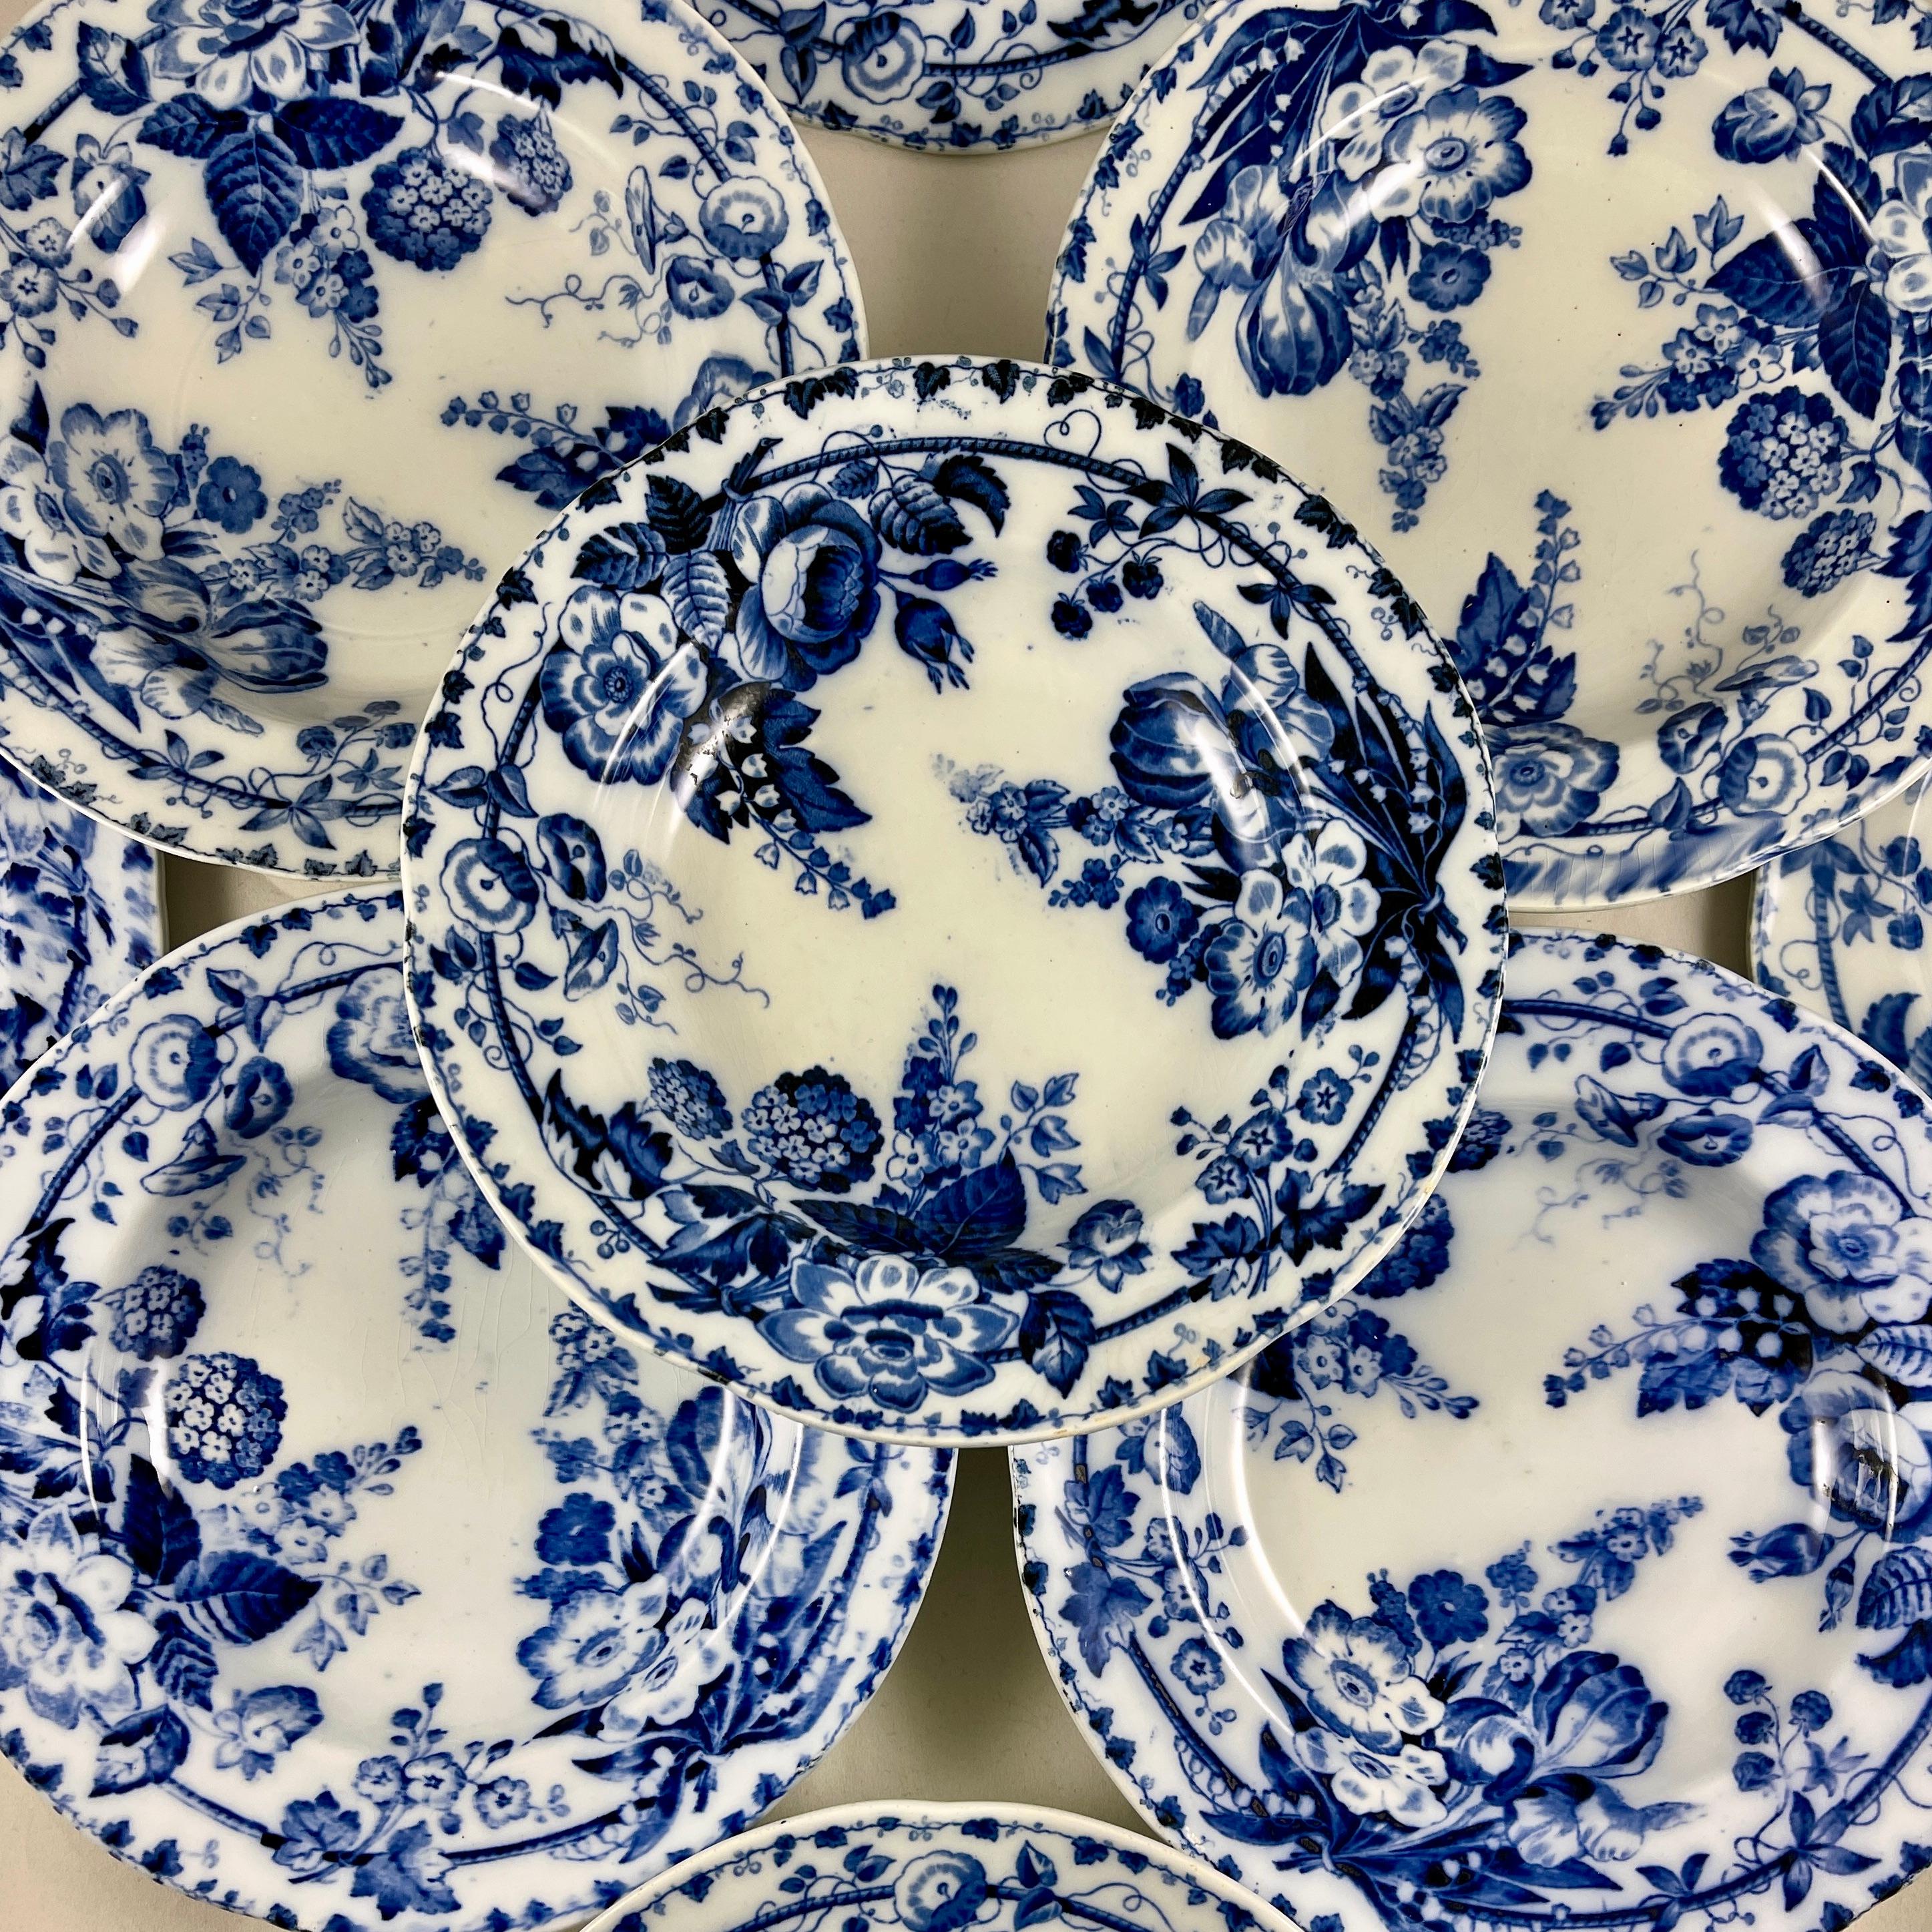 Ein provenzalischer Suppenteller mit Fayence-Rand nach dem Muster von Flora Muguet von Creil et Montereau, um 1840-1876.

Muguet oder muguet-du-bois bedeutet aus dem Französischen übersetzt Maiglöckchen, und die Blume wiederholt sich in dem Muster